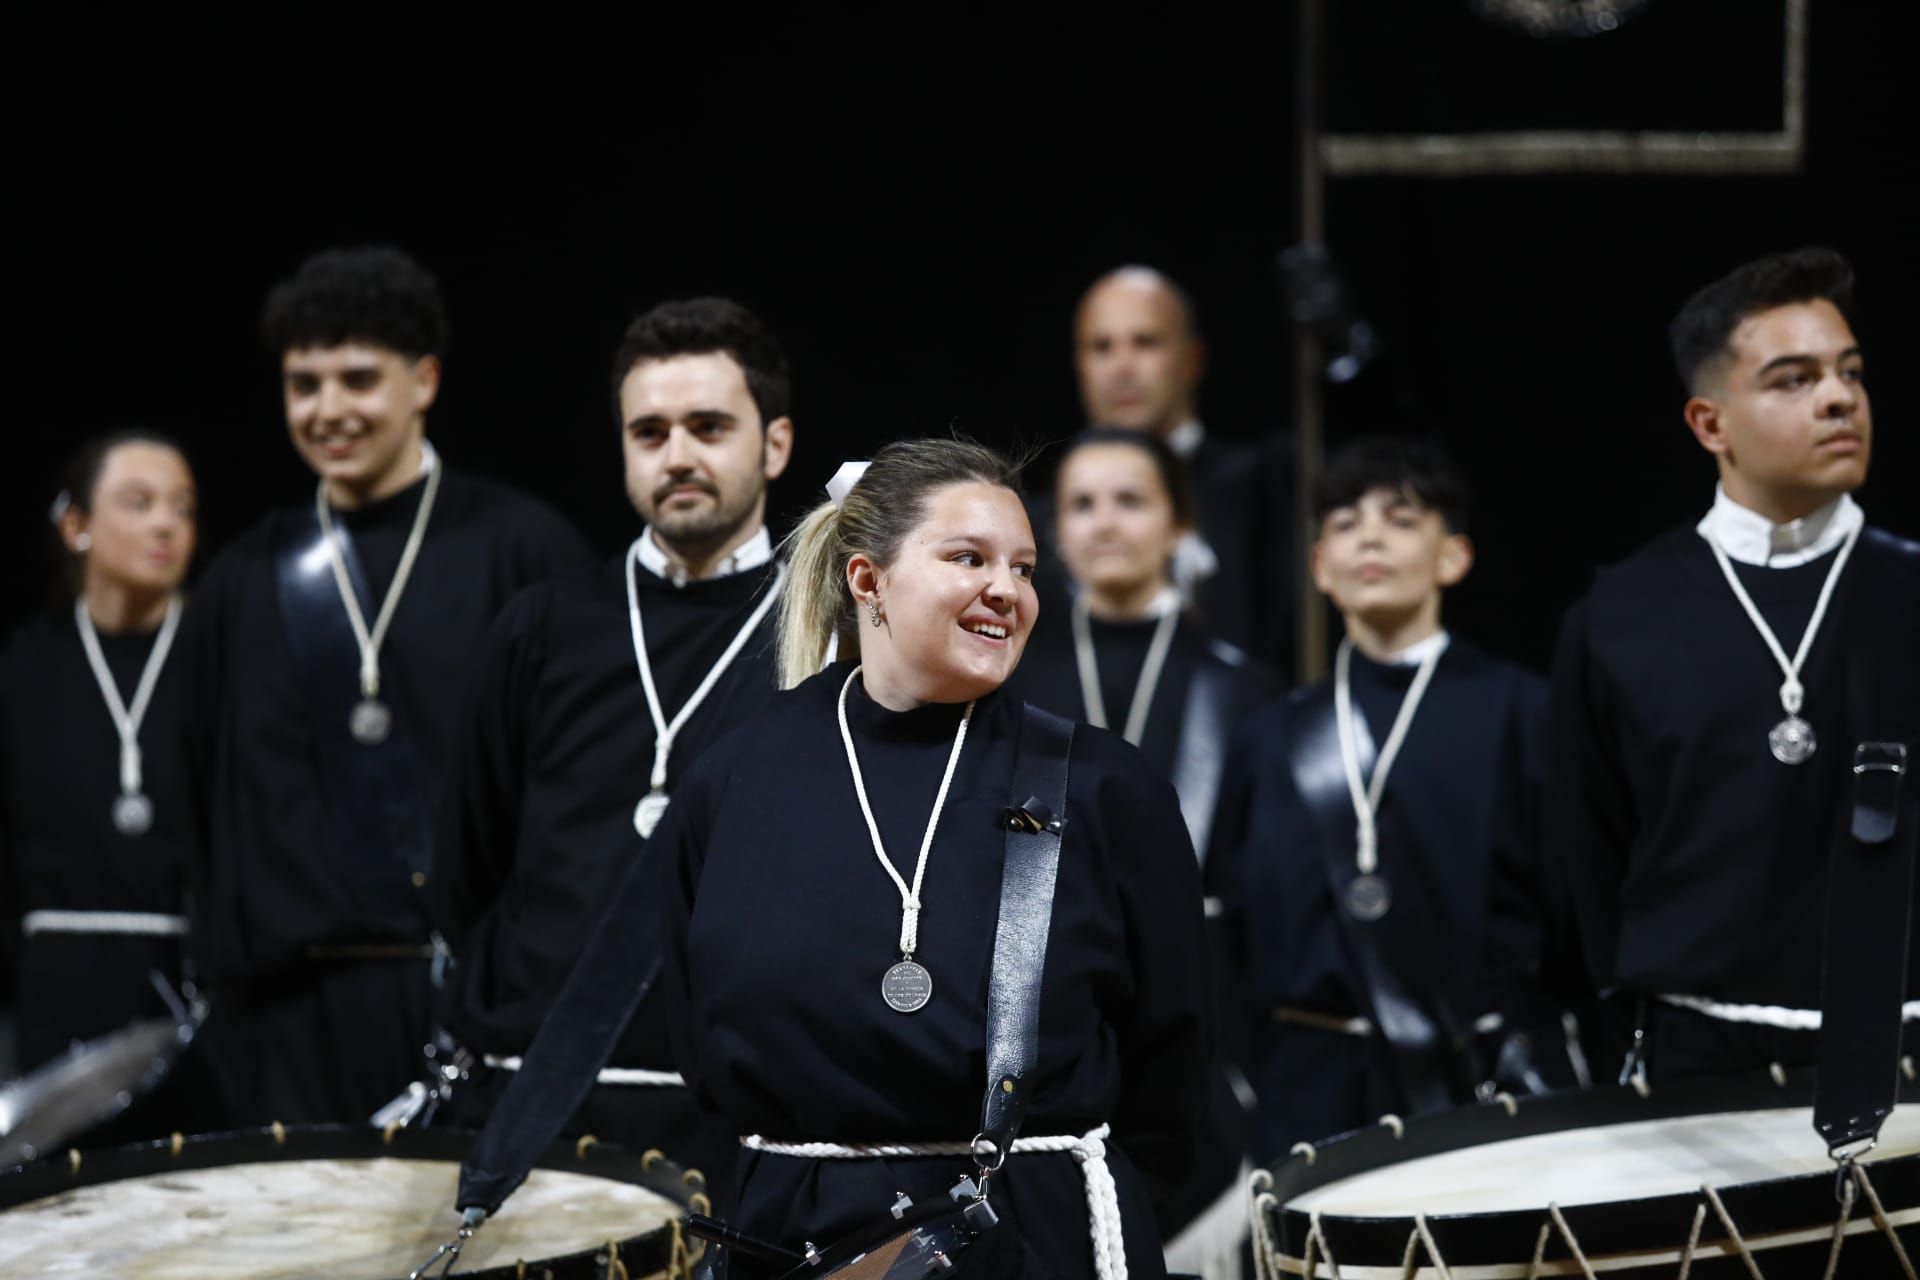 Concurso de tambores de la Semana Santa de Zaragoza en el Príncipe Felipe